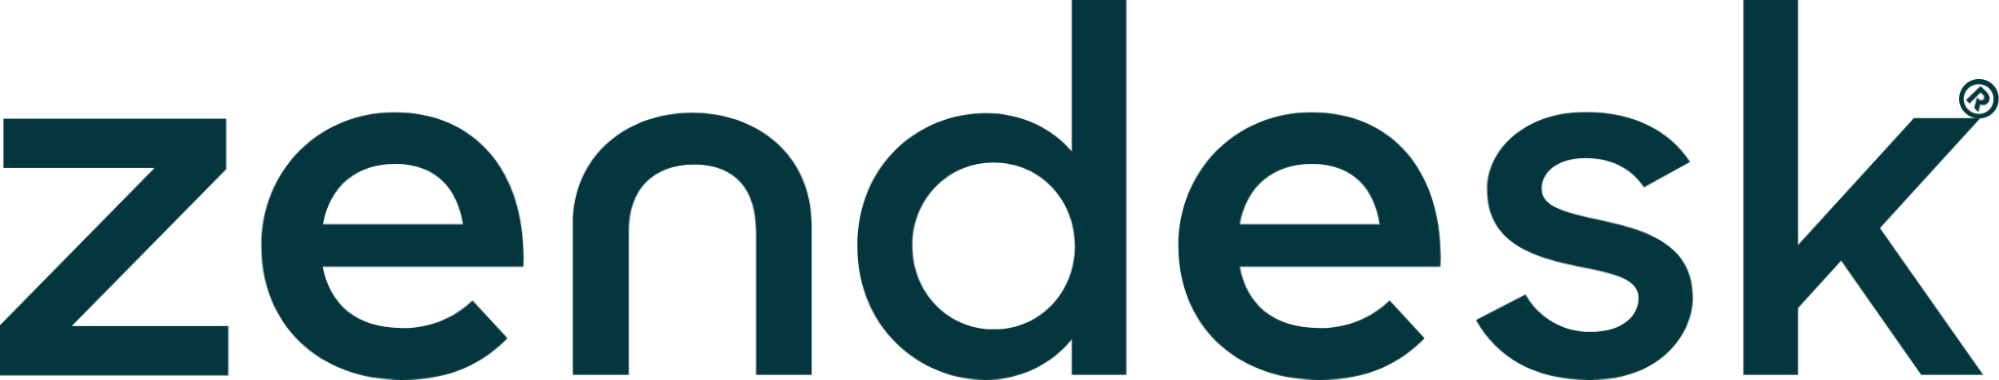 Logo da Zendesk com as letras escritas na cor cinza escuro. software de help desk